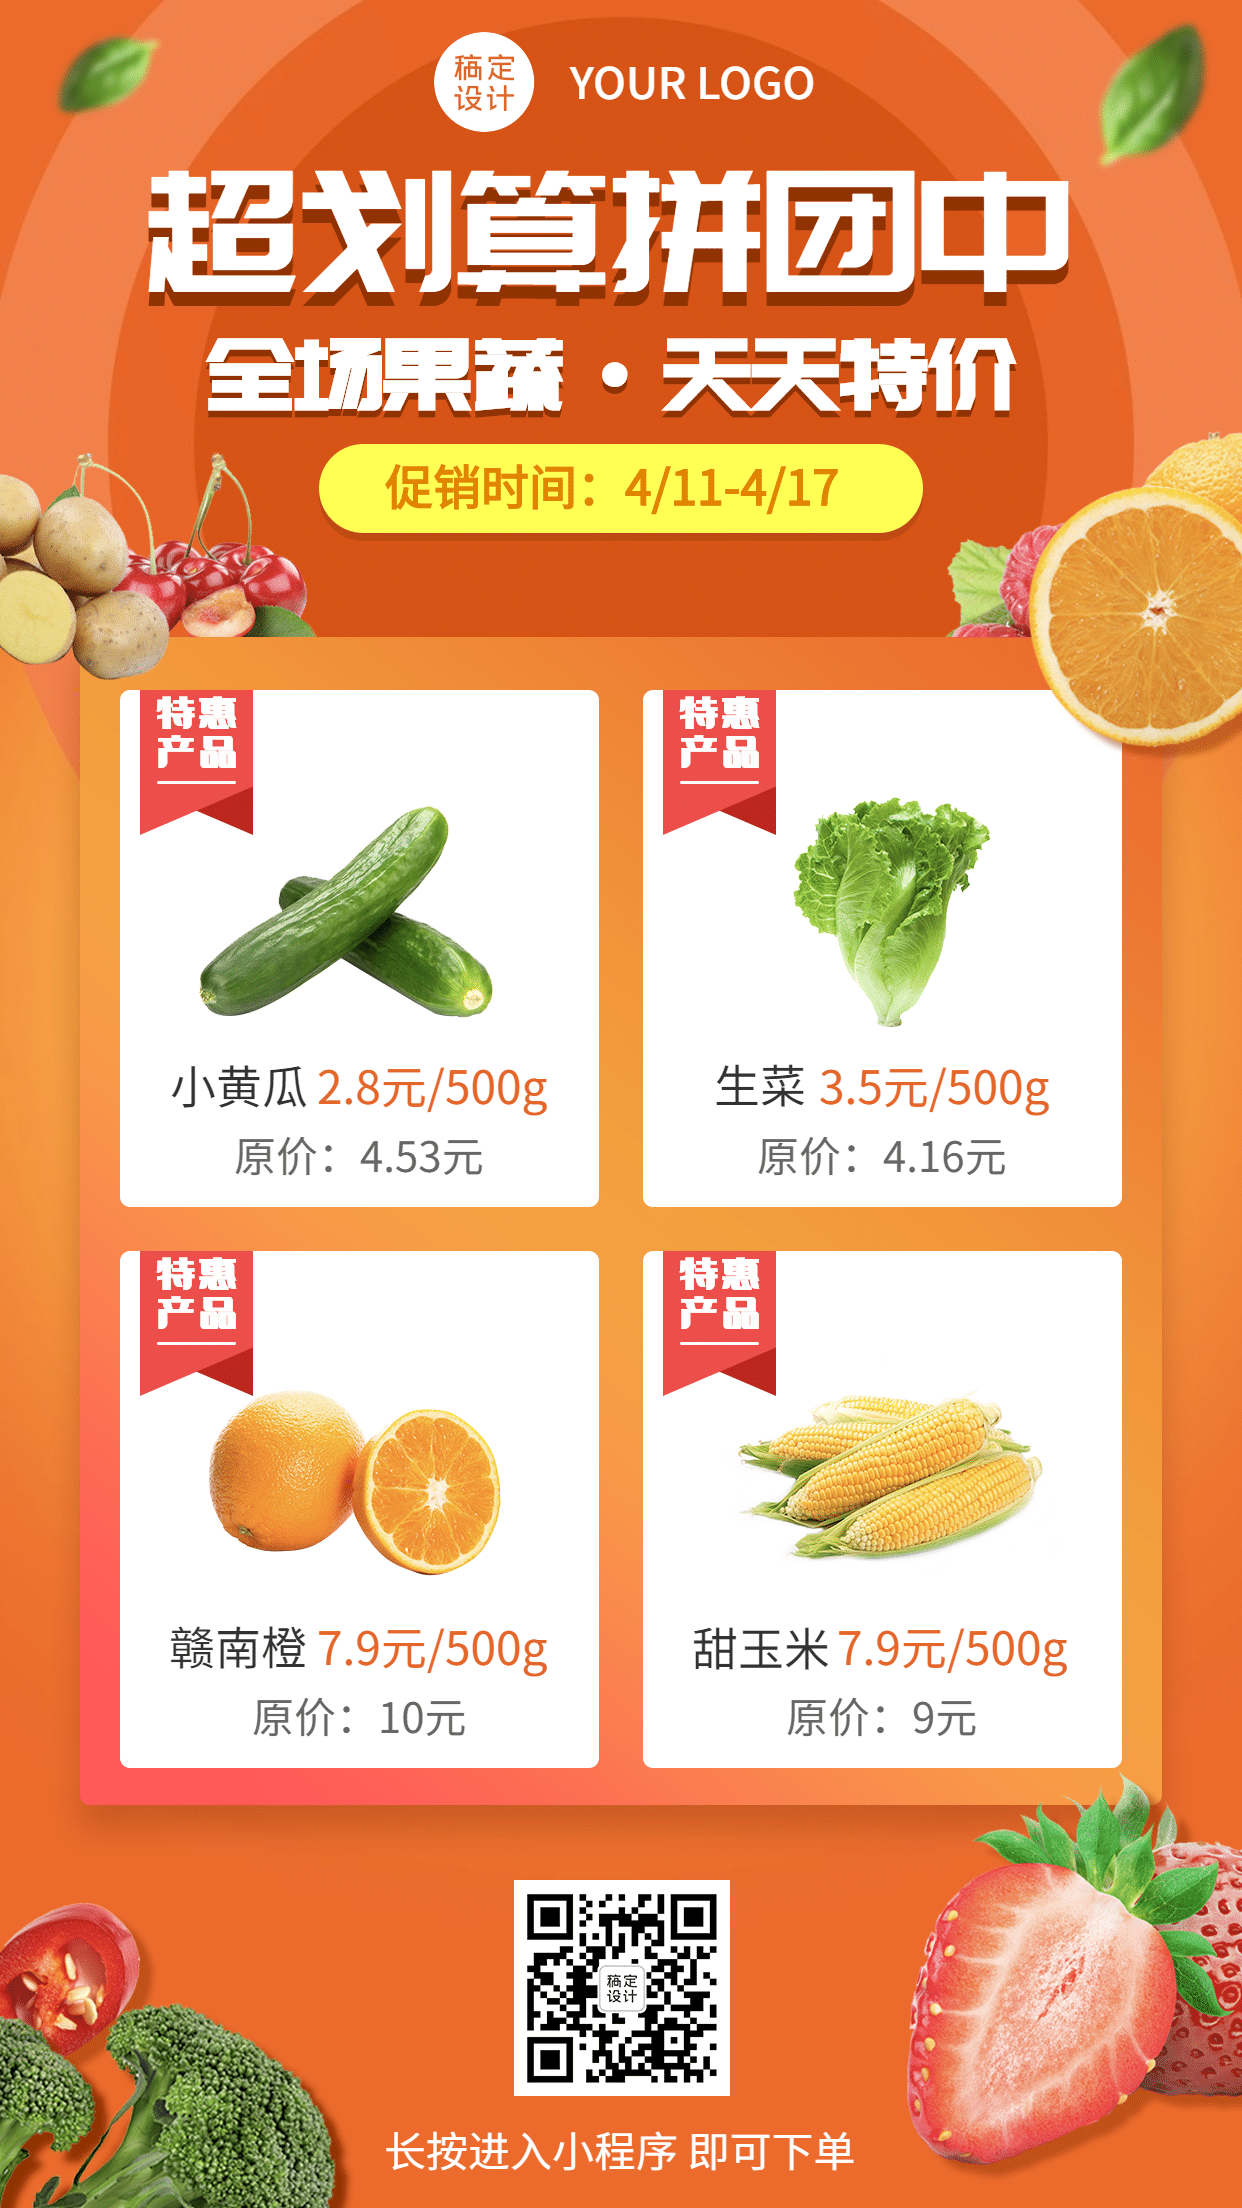 生鲜水果蔬菜产品展示手机海报预览效果